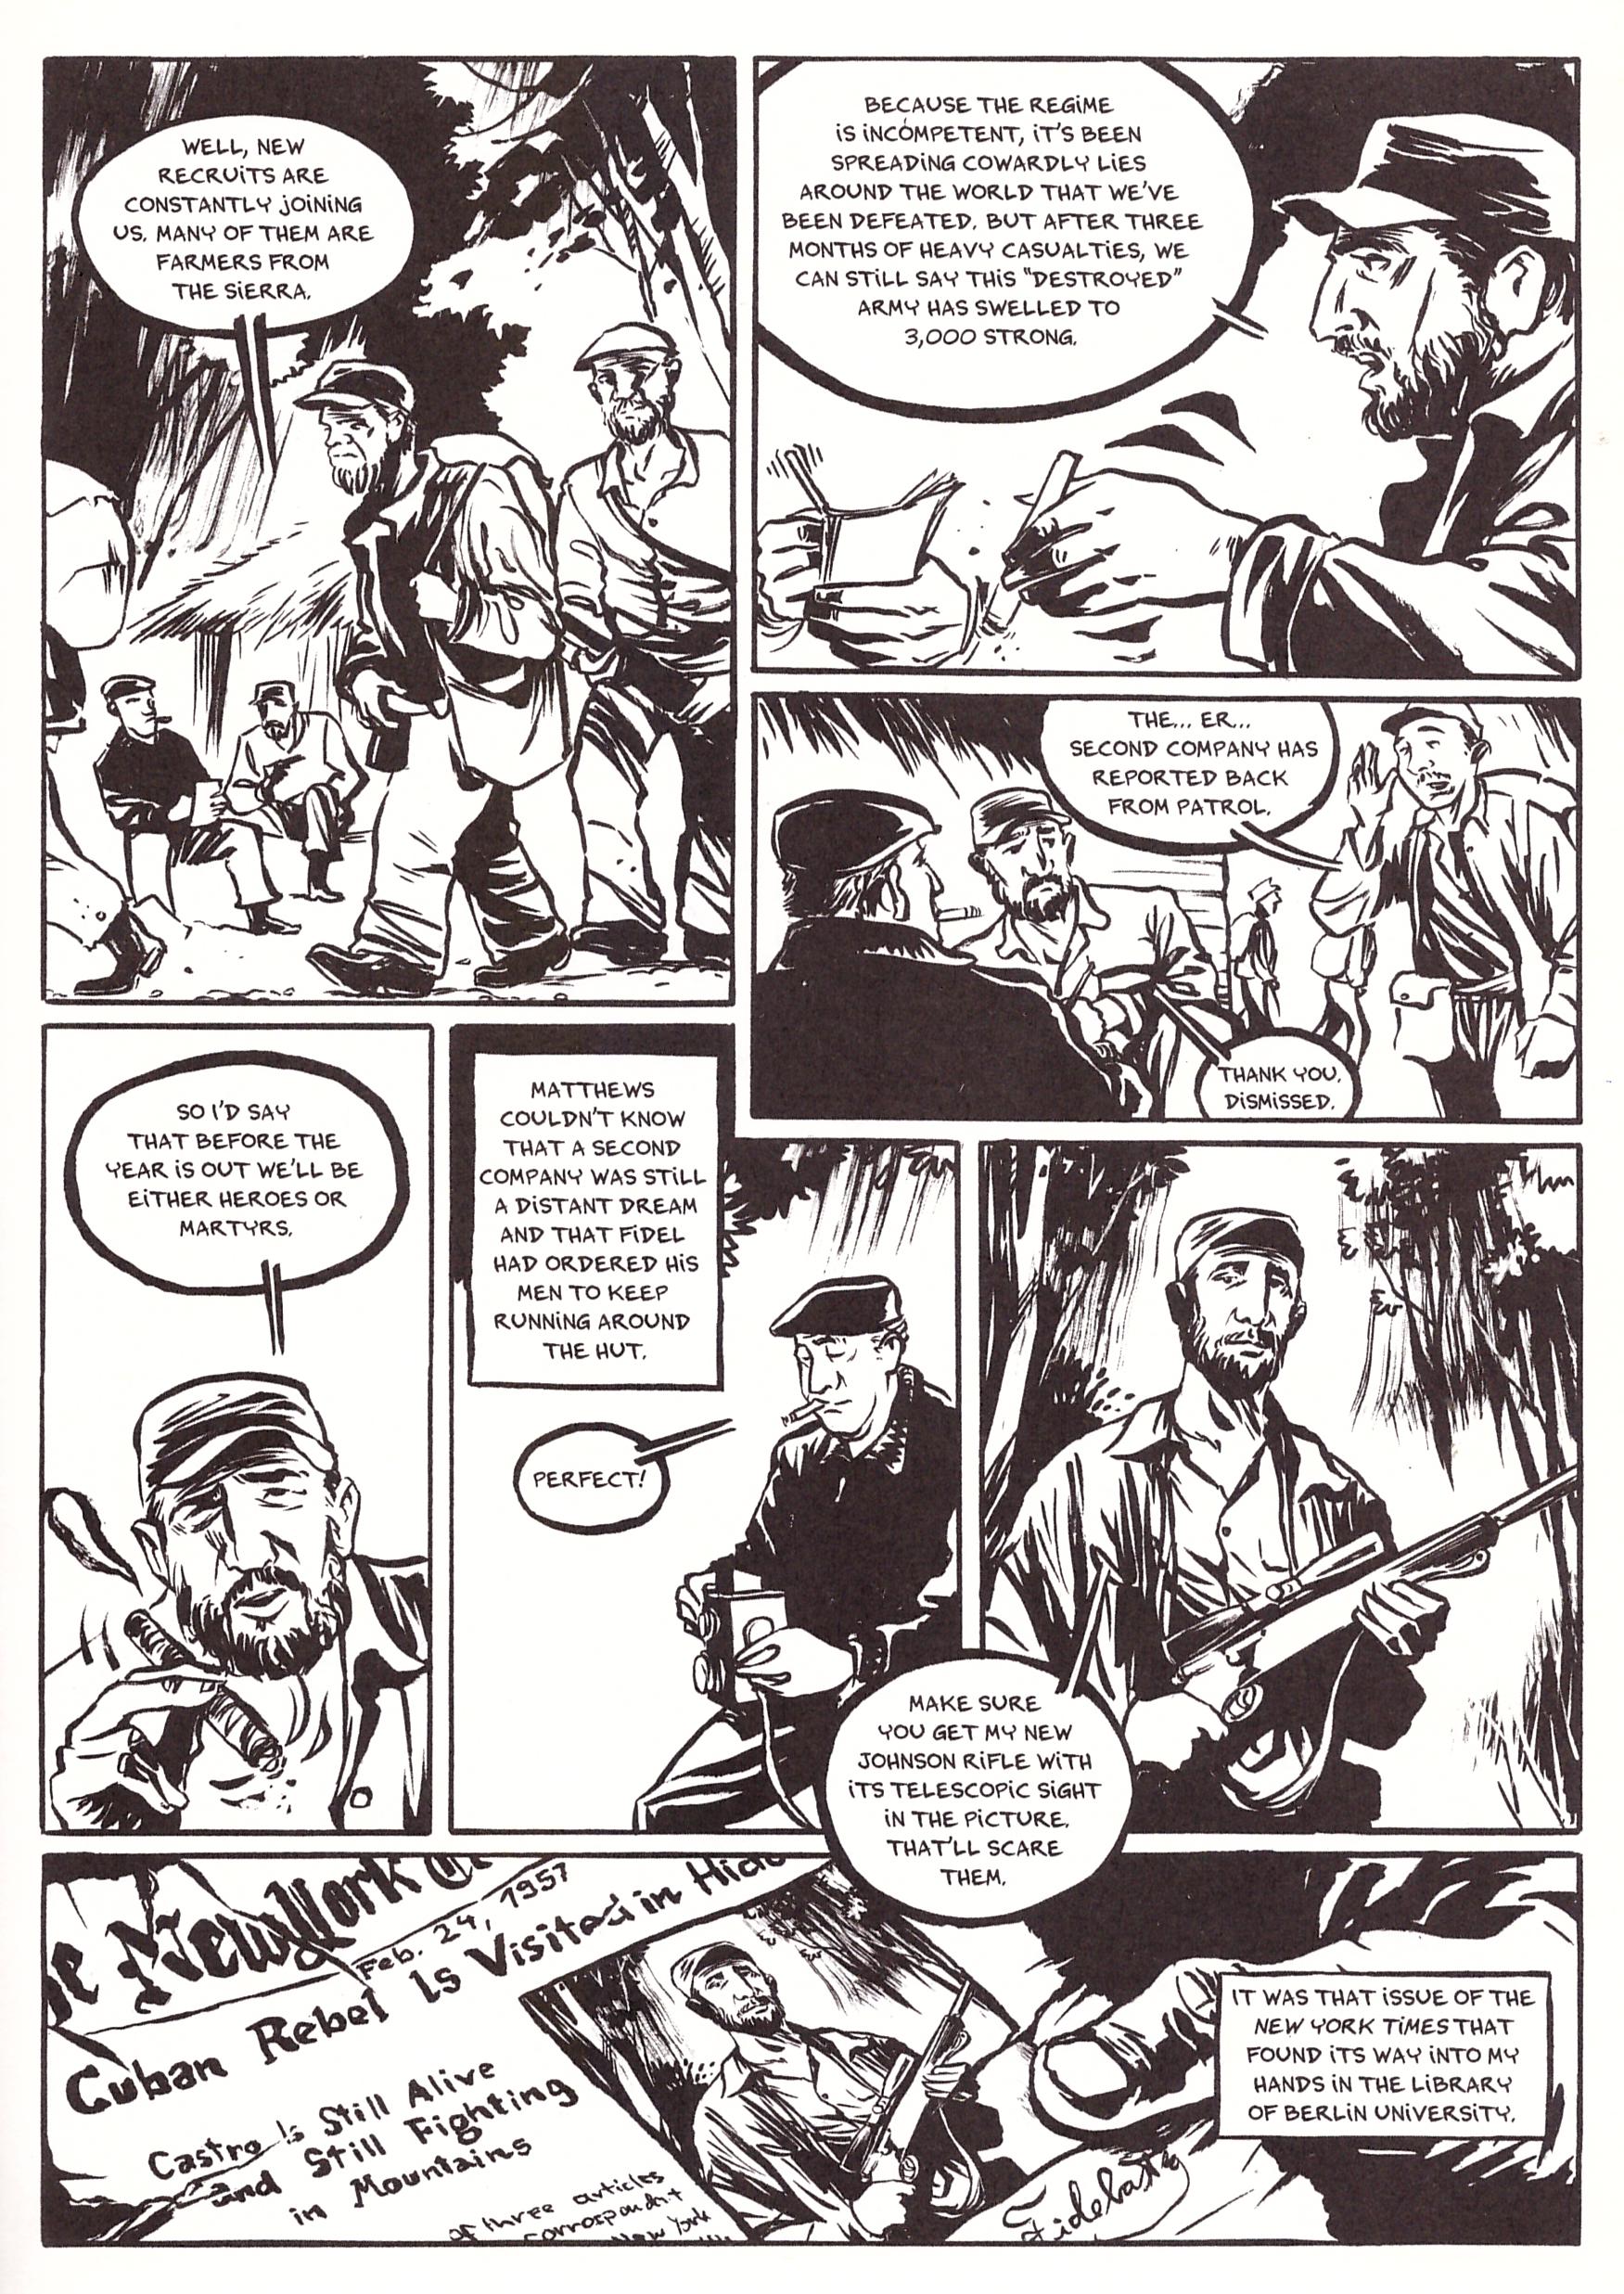 Castro graphic novel review